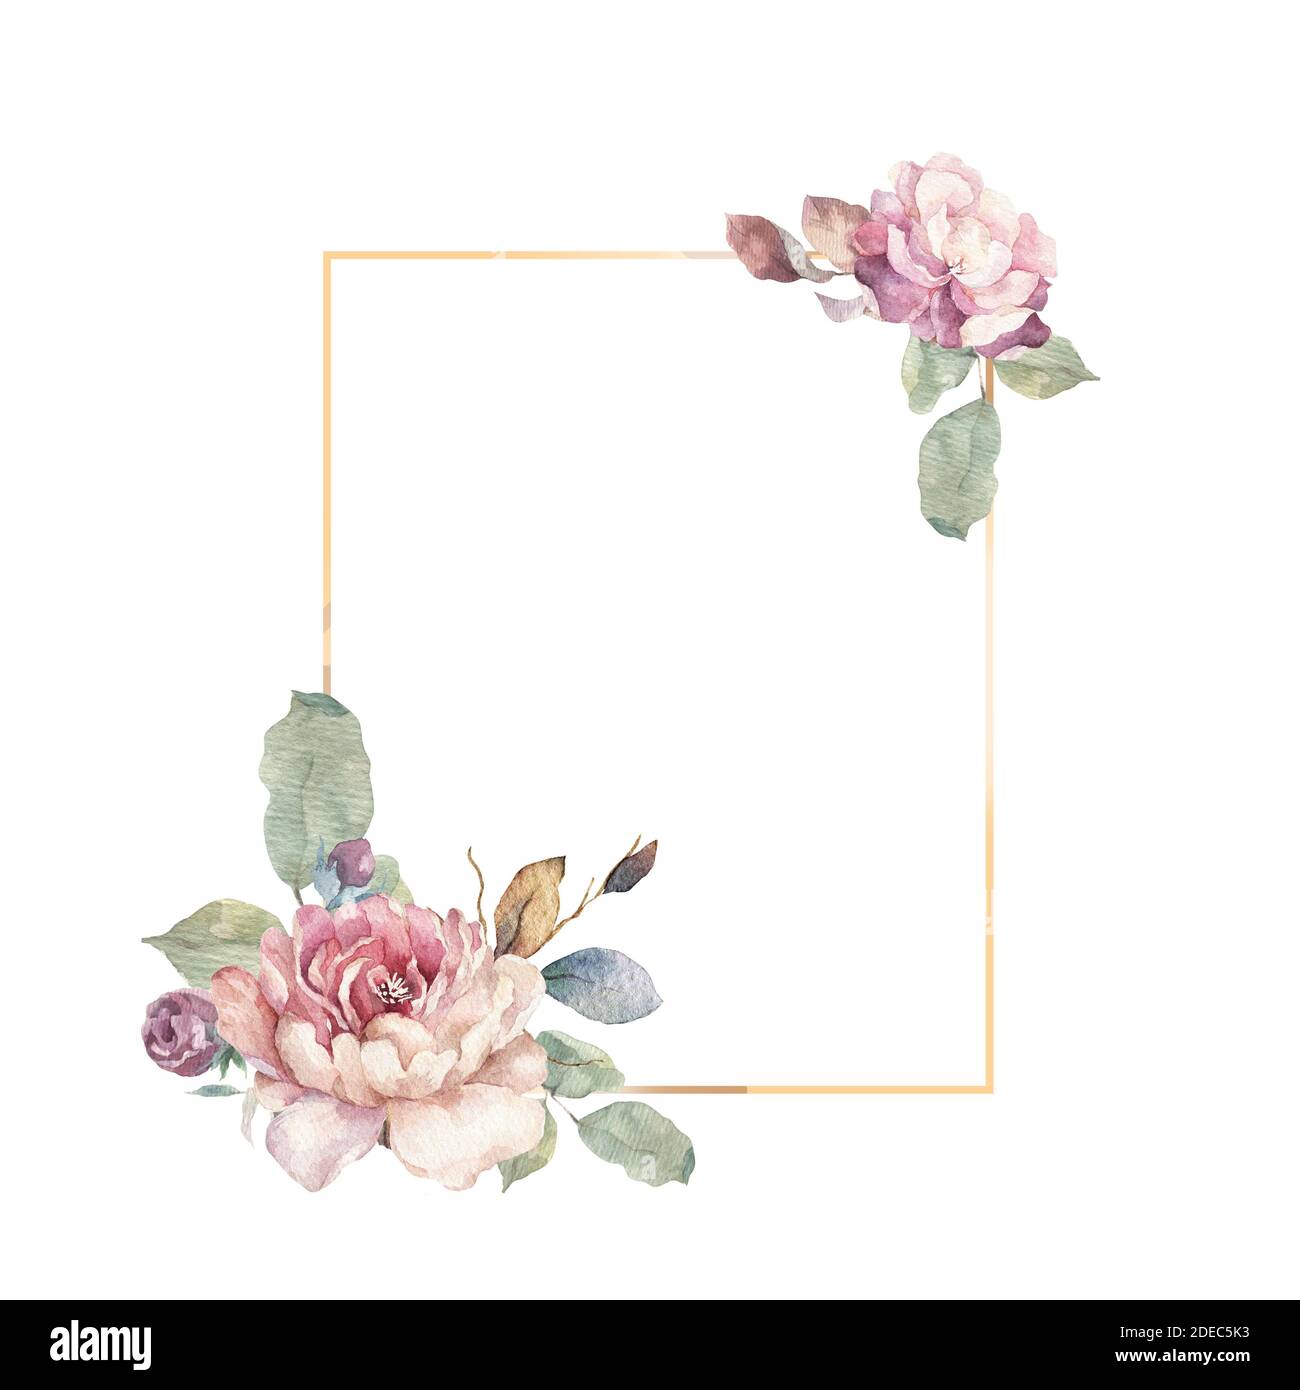 Hochzeitseinladung, rosa Blumen mit Blättern und floraler Einladungskarte,  Bouwuet mit geometrischem goldenem Rahmendruck. Weißer Hintergrund  Stockfotografie - Alamy